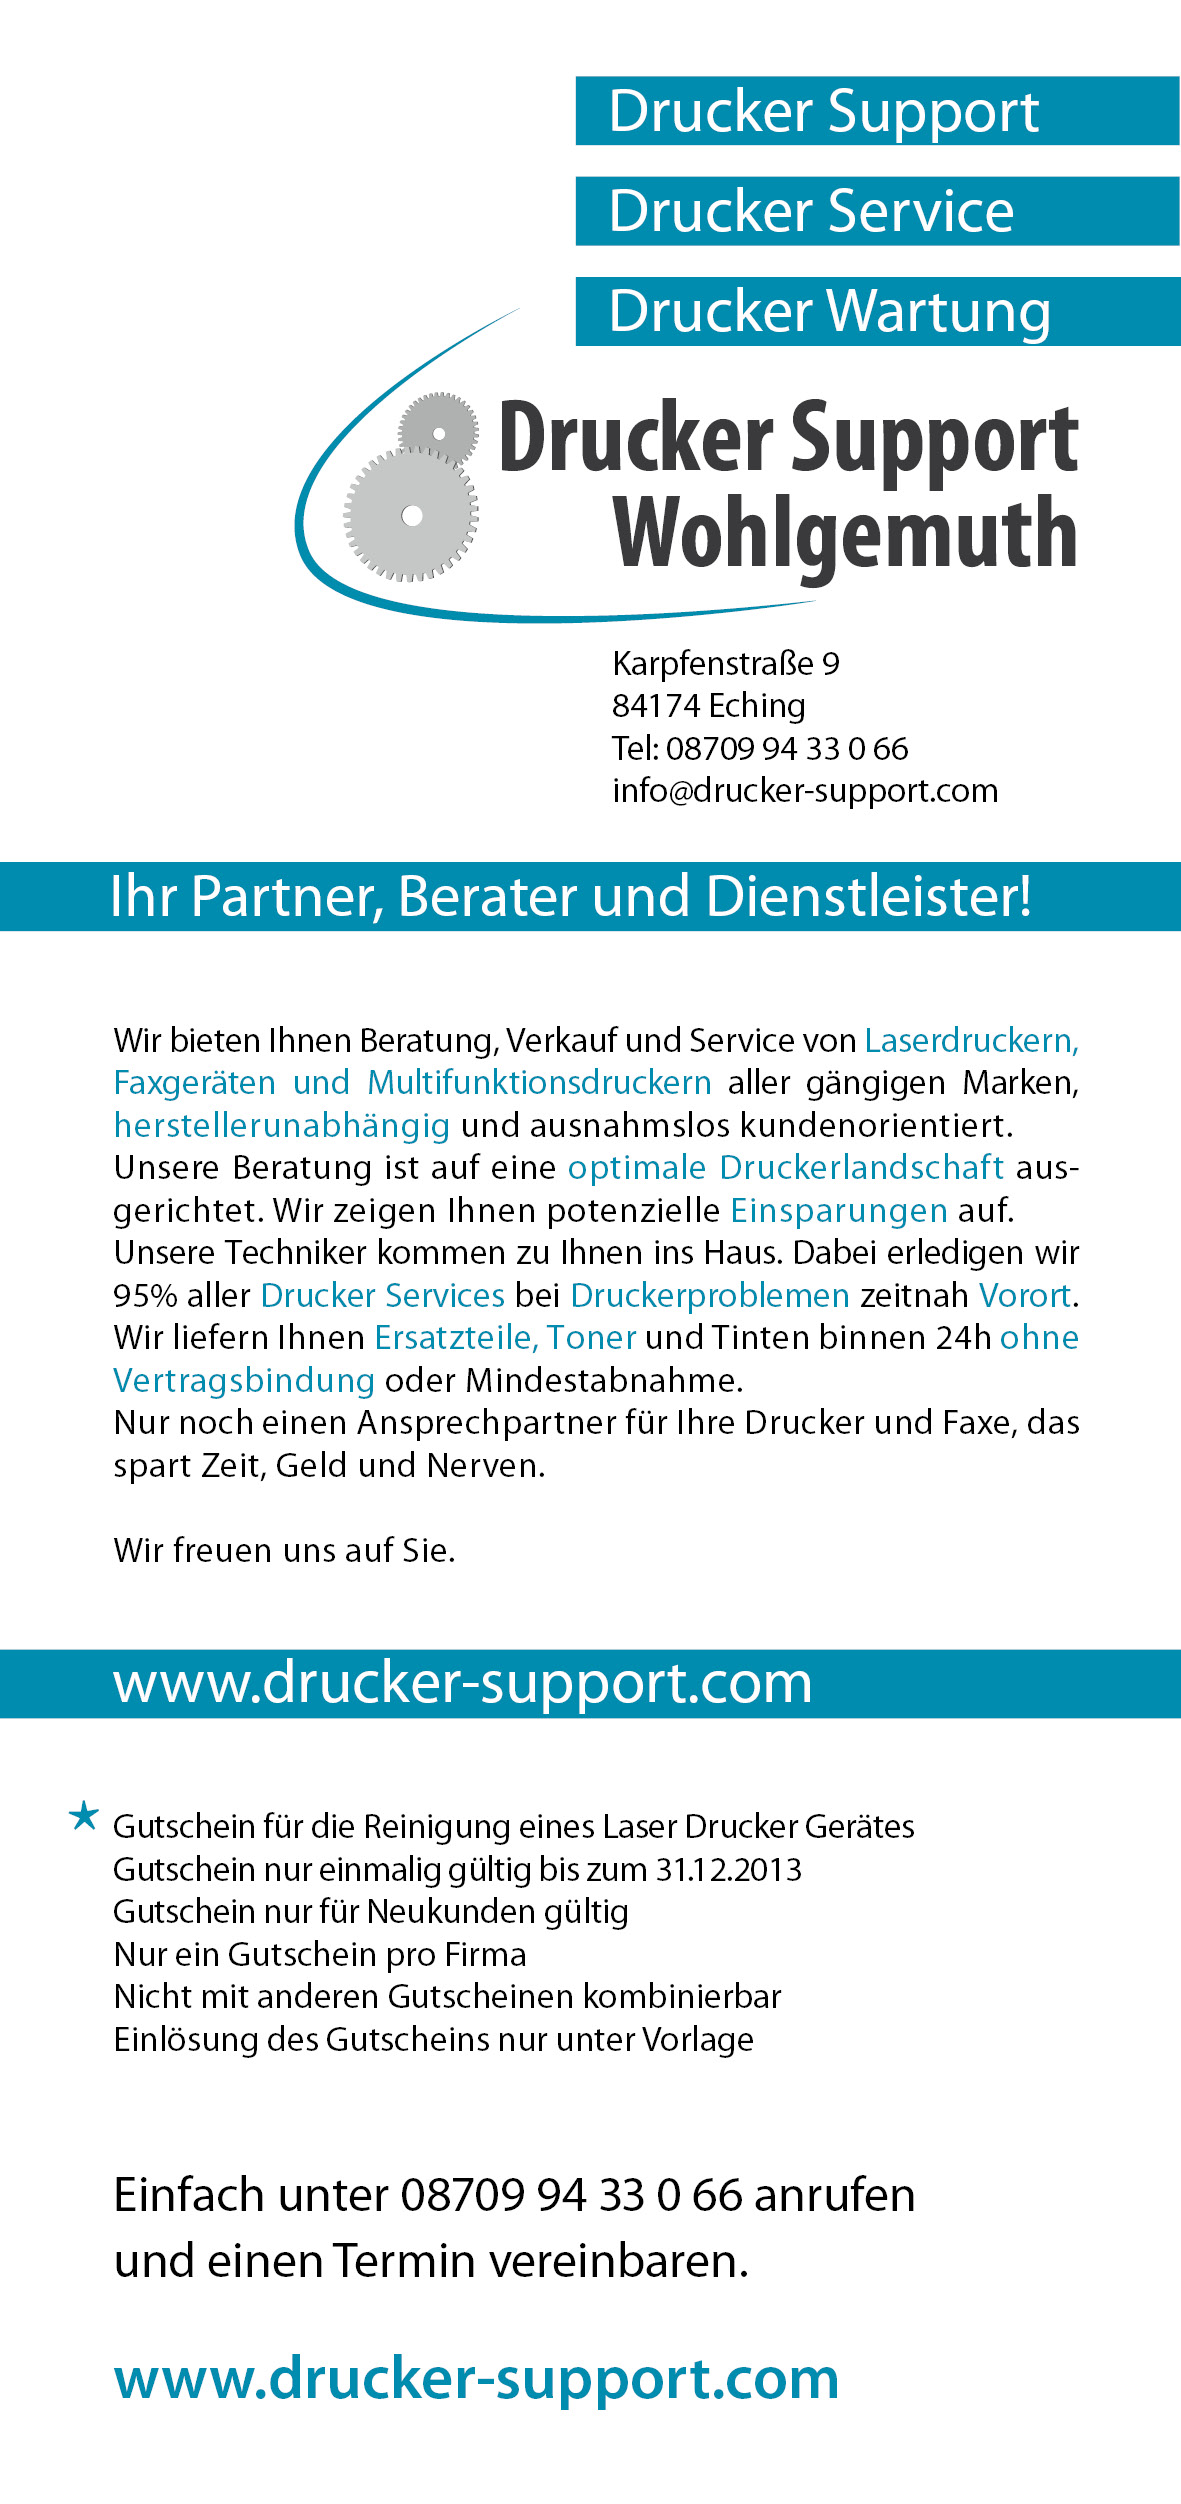 flyer Drucker Support Wohlgemuth 2.jpg